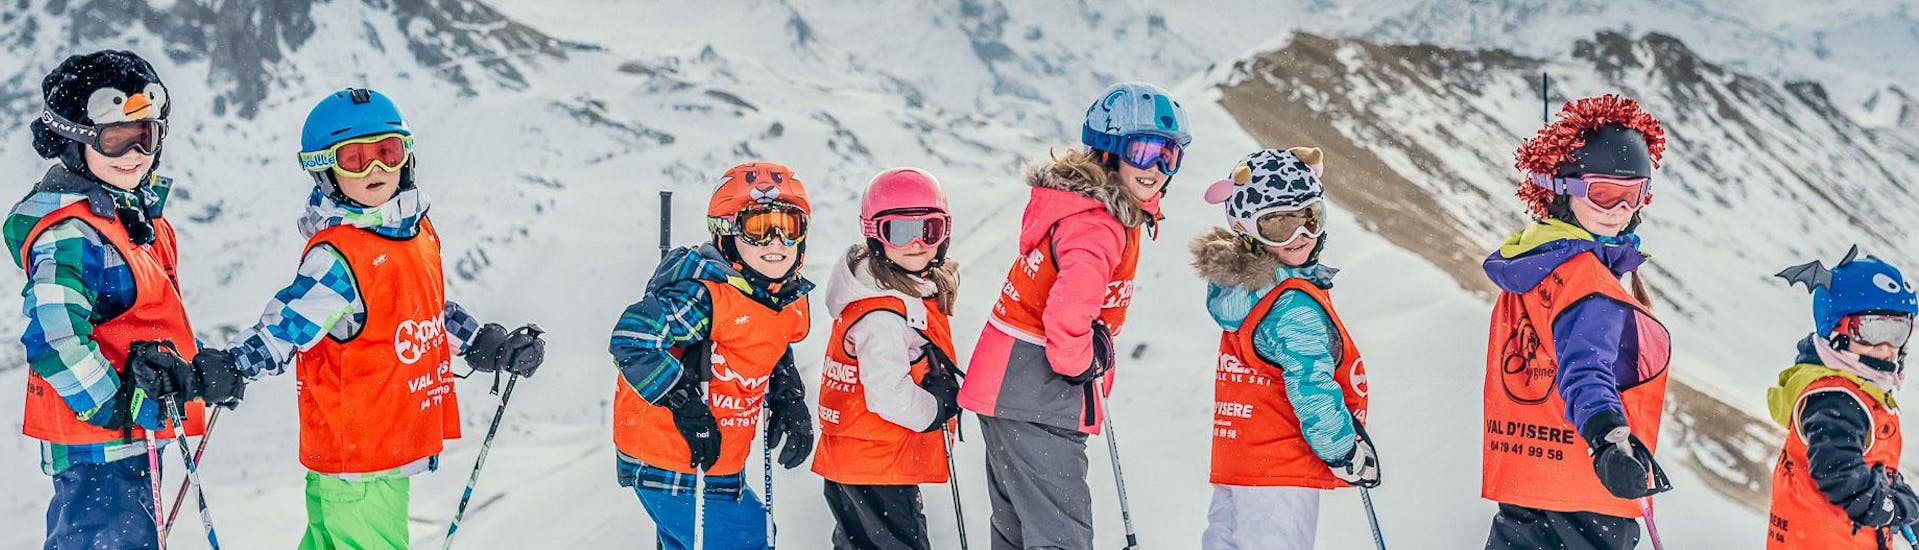 Skilessen voor kinderen vanaf 3 jaar.